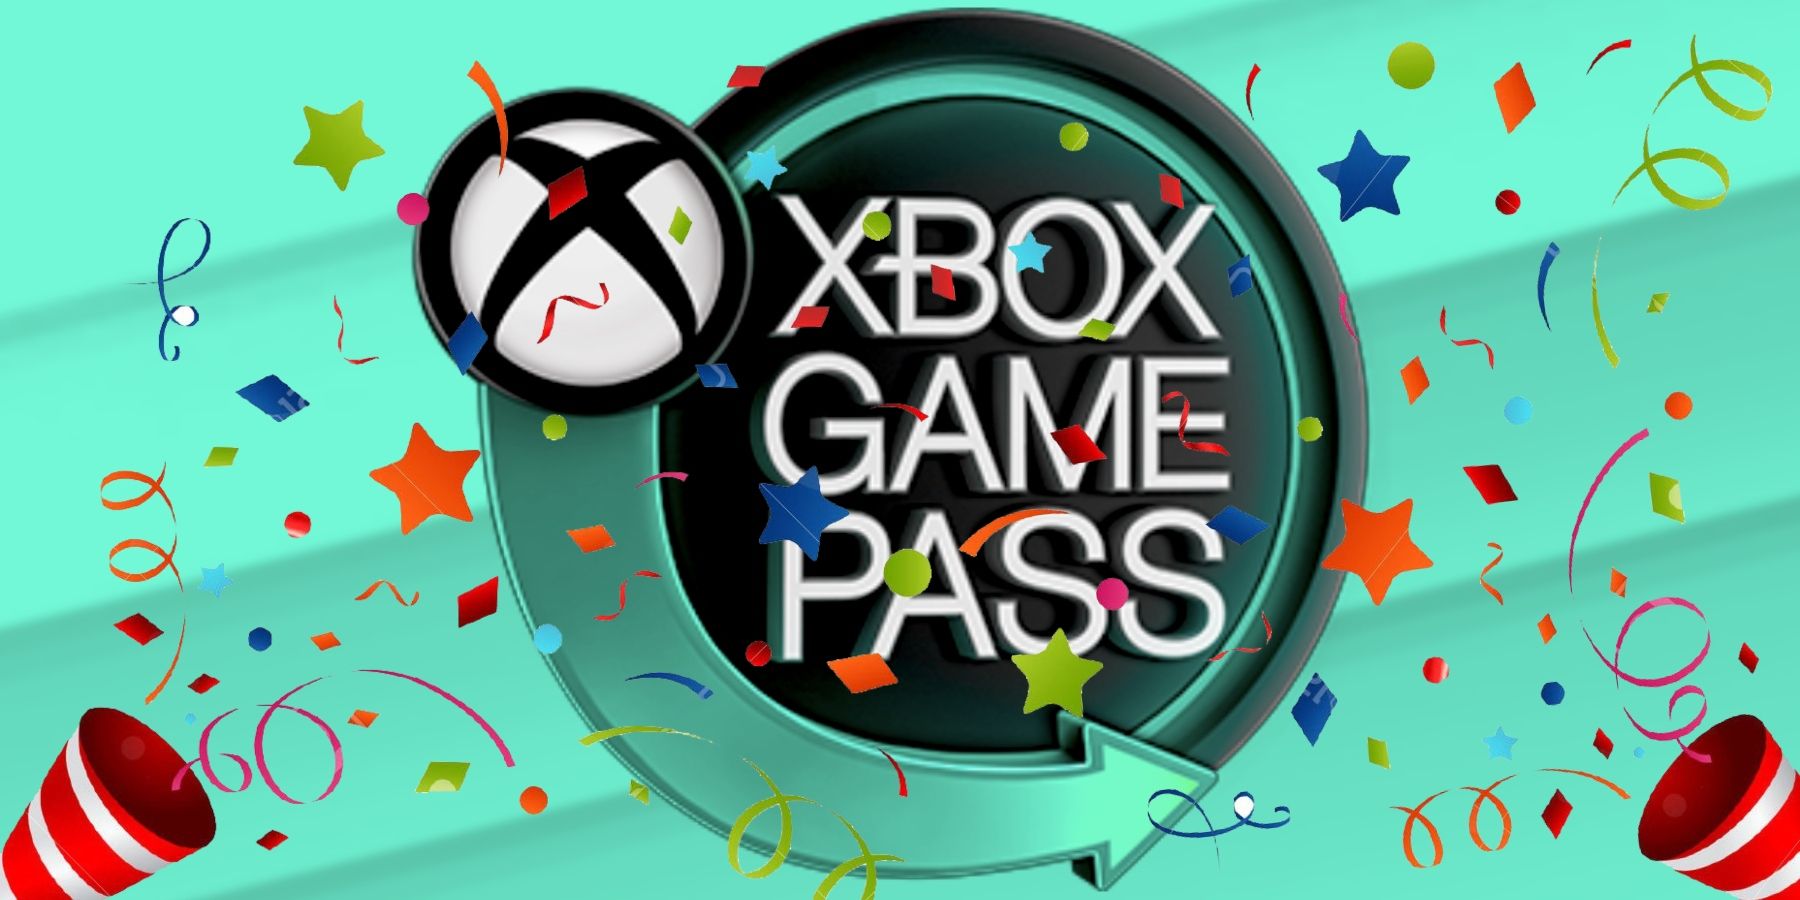 Pastor Xbox 🙏🏽💚 on X: 𝗫𝗯𝗼𝘅 𝗚𝗮𝗺𝗲 𝗣𝗮𝘀𝘀